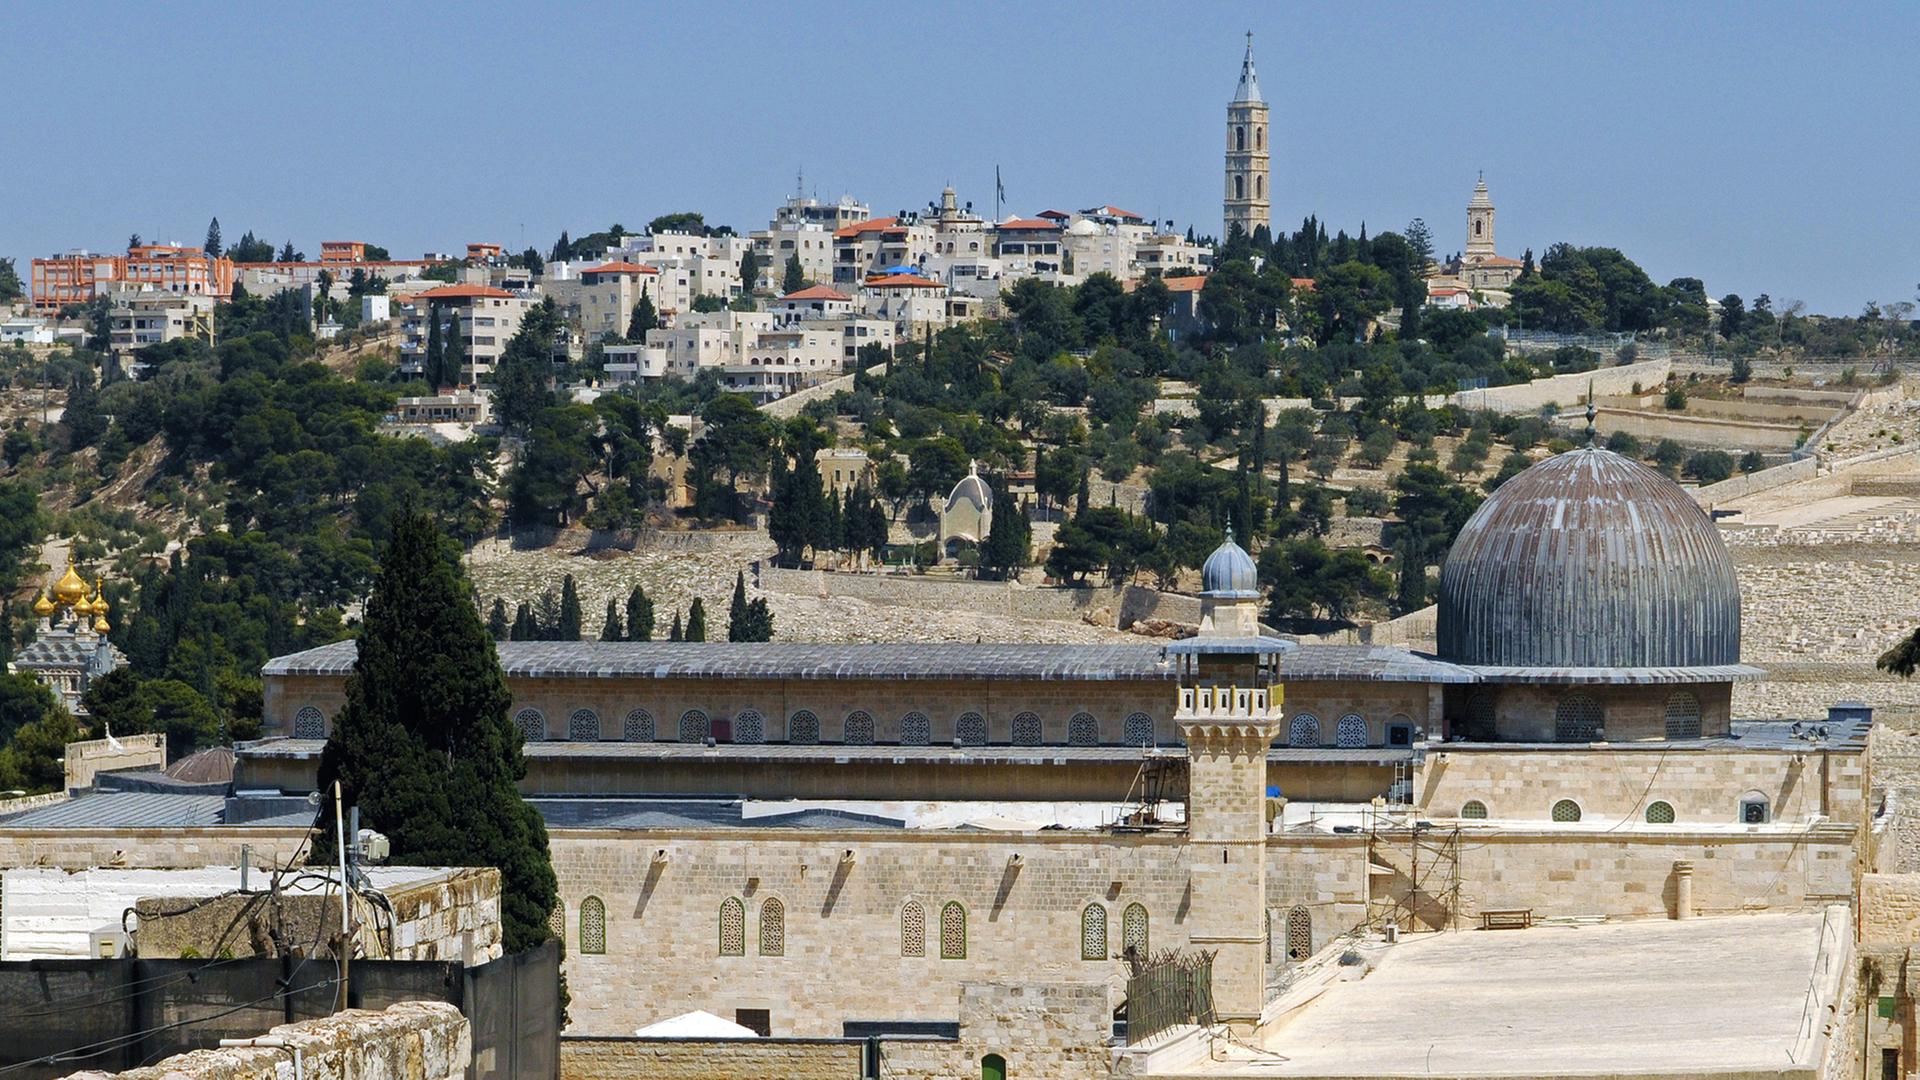 Blick auf die Al-Aqsa-Moschee mit ihrem langezogenen, metallgedeckten Schiff und Kuppel auf dem Tempelberg, aufgenommen am 10.09.2013.